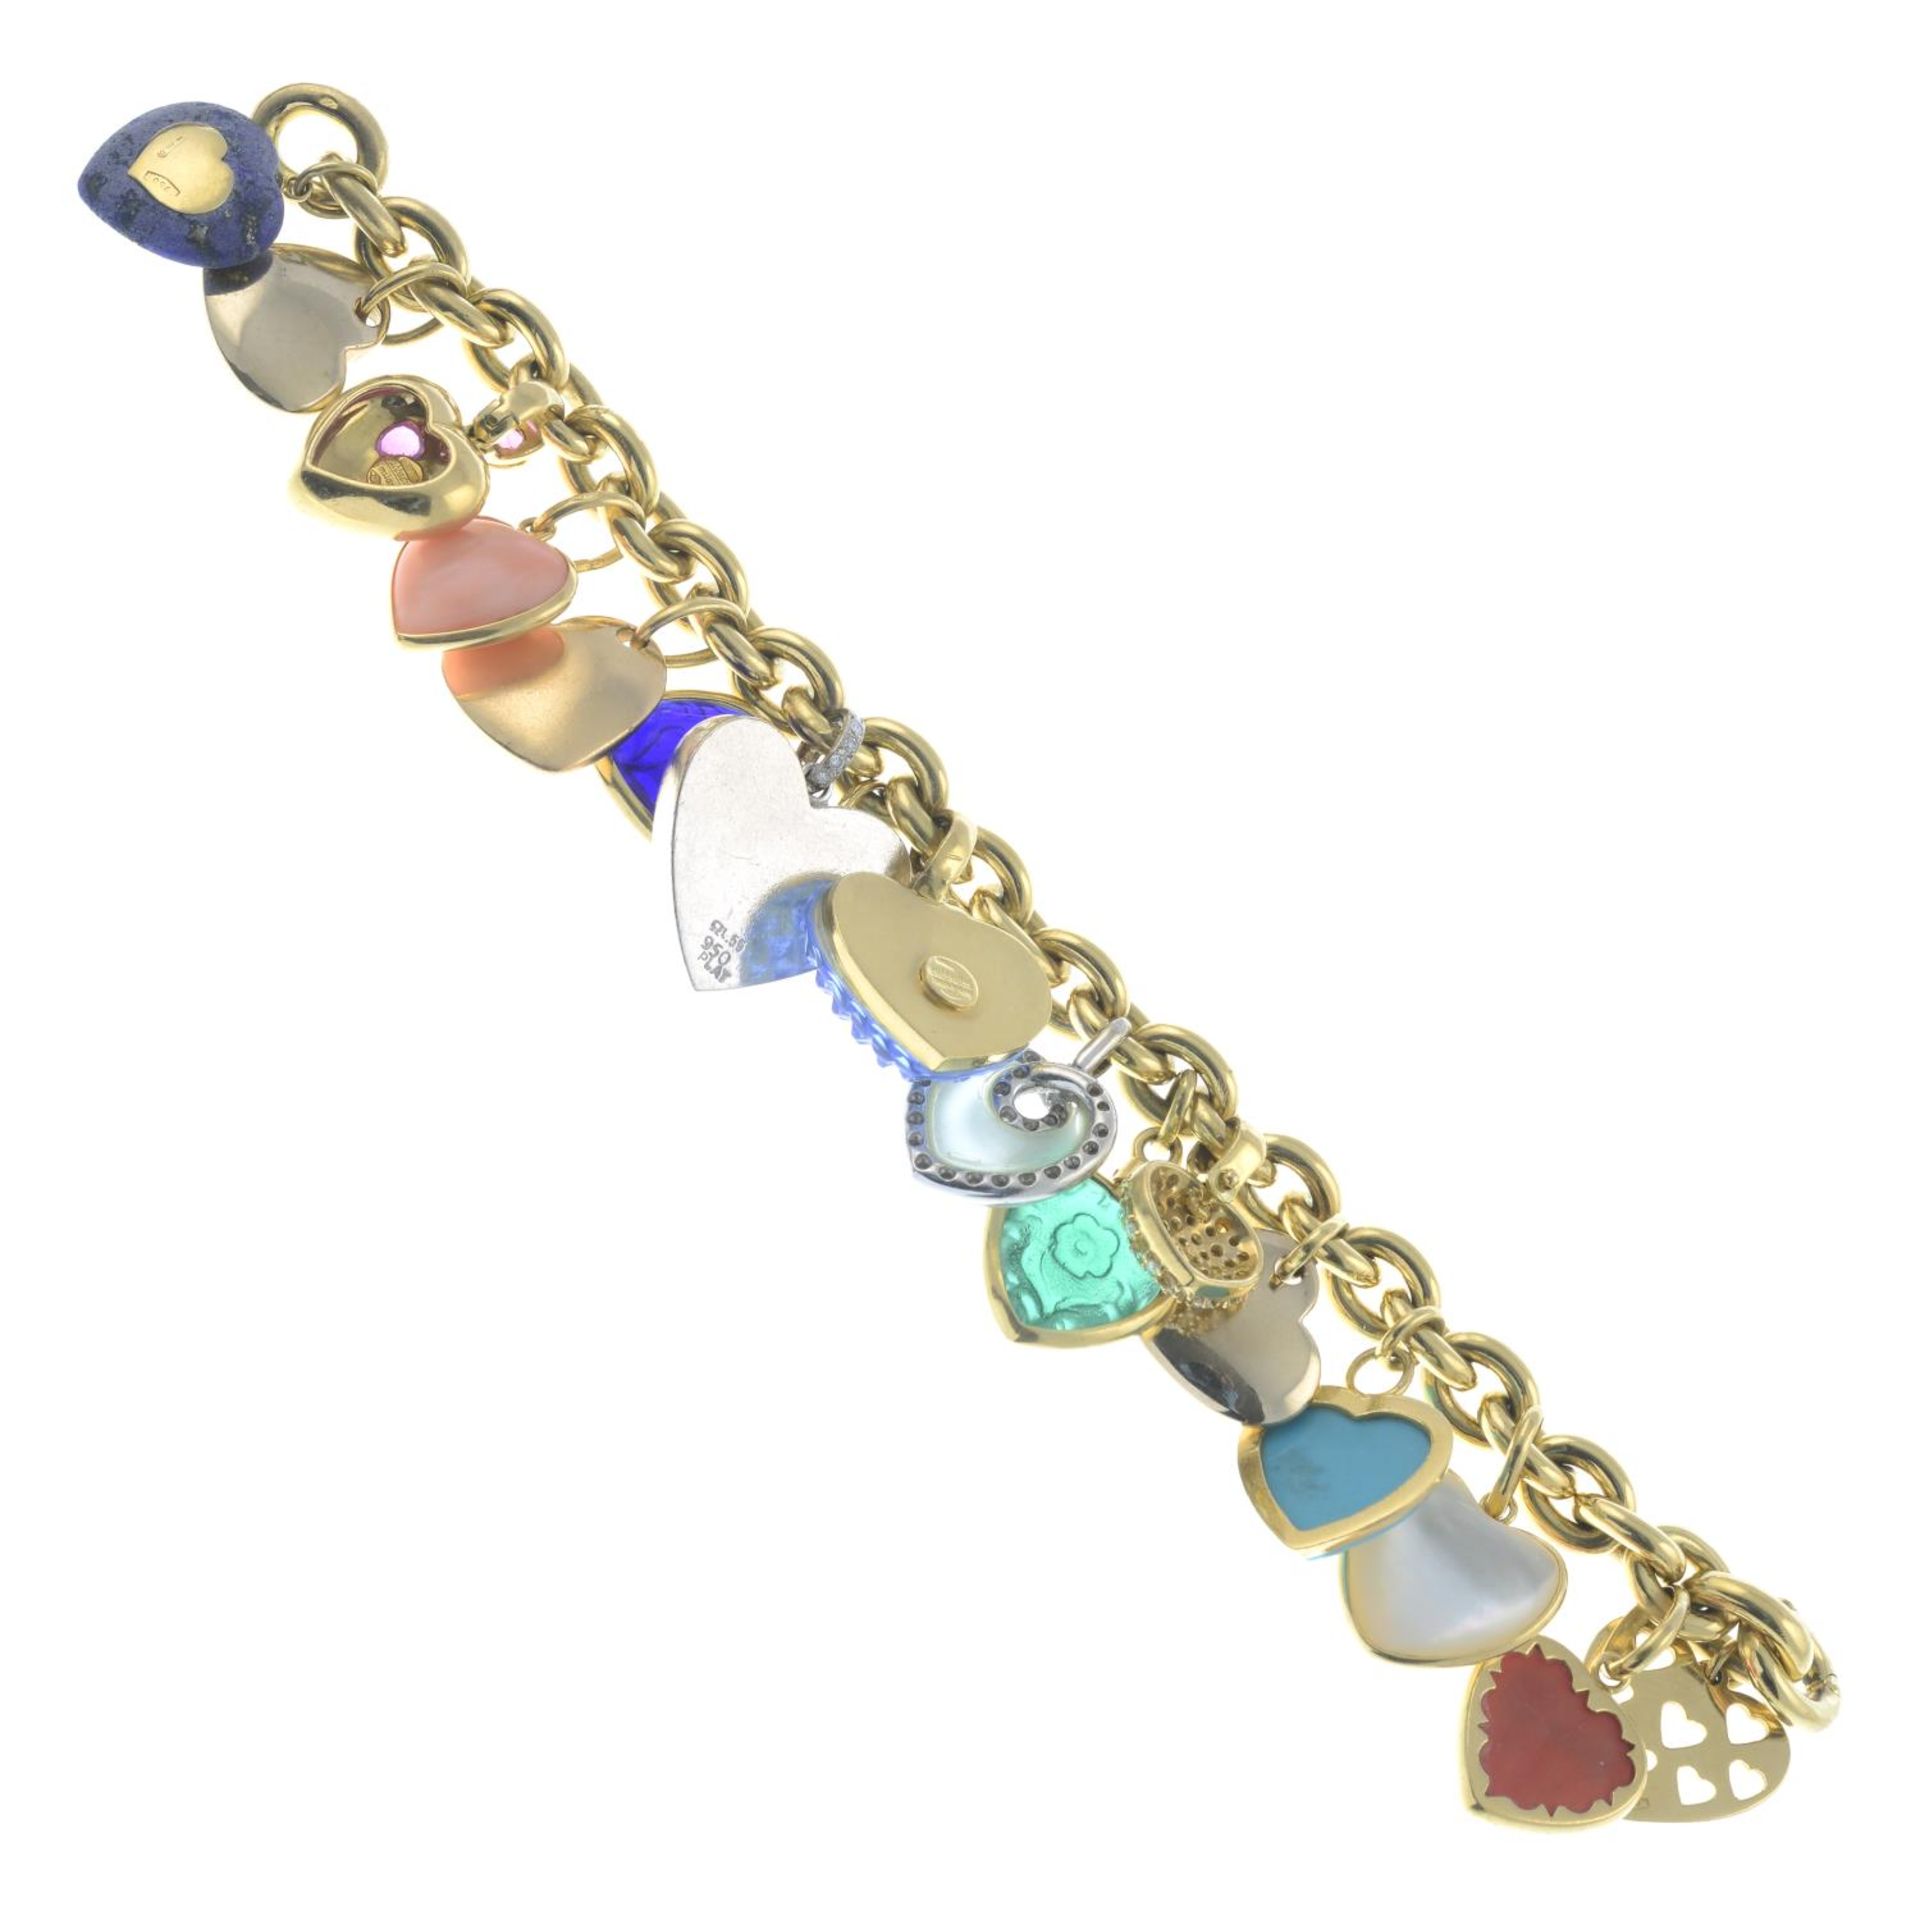 A charm bracelet, - Image 3 of 3